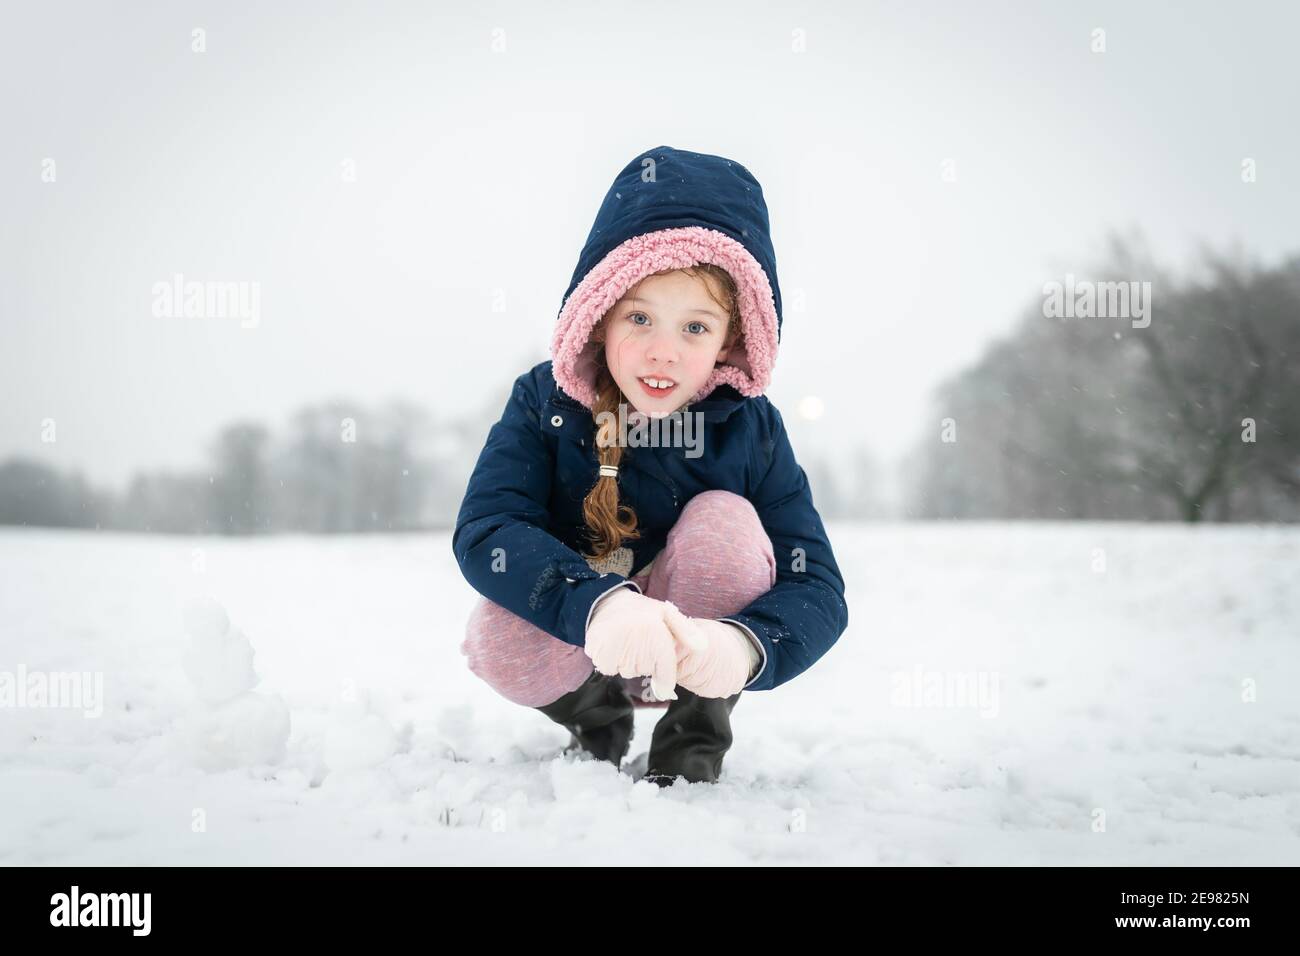 Schöne junge Mädchen lächelnd glücklich spielen draußen im fallenden Schnee Blick auf die Kamera eingewickelt warm mit blauen Mantel Kapuze Bis Handschuhe und Stiefel Schneefall Stockfoto